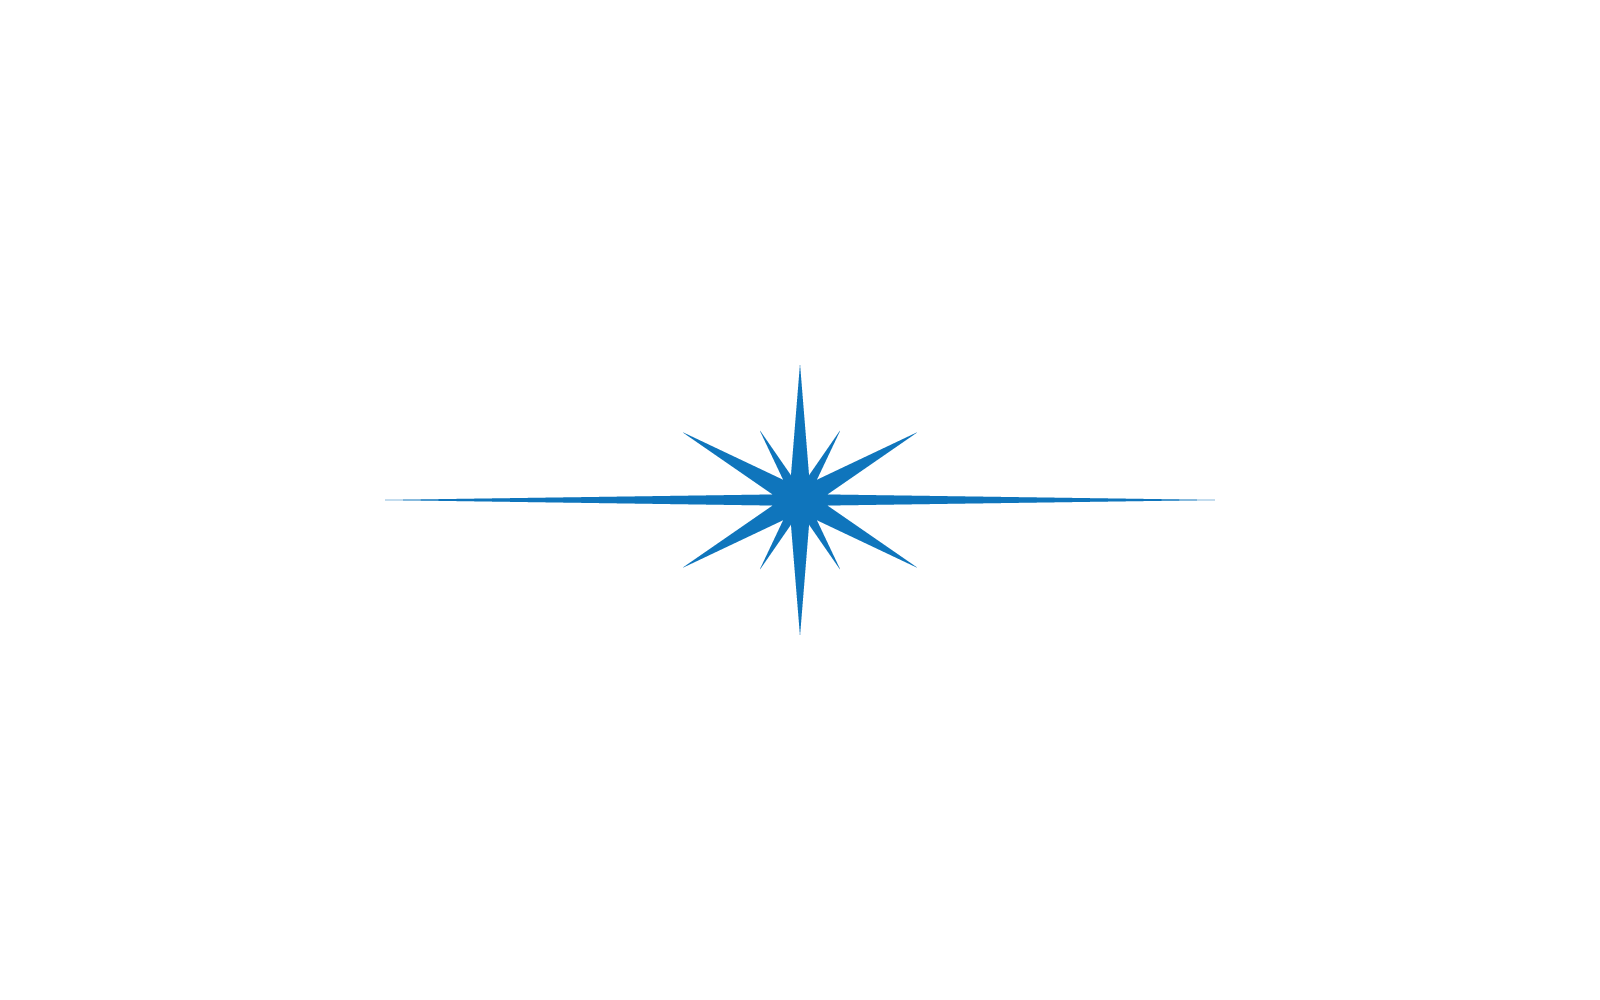 Projekt ilustracji szablonu logo kompasu